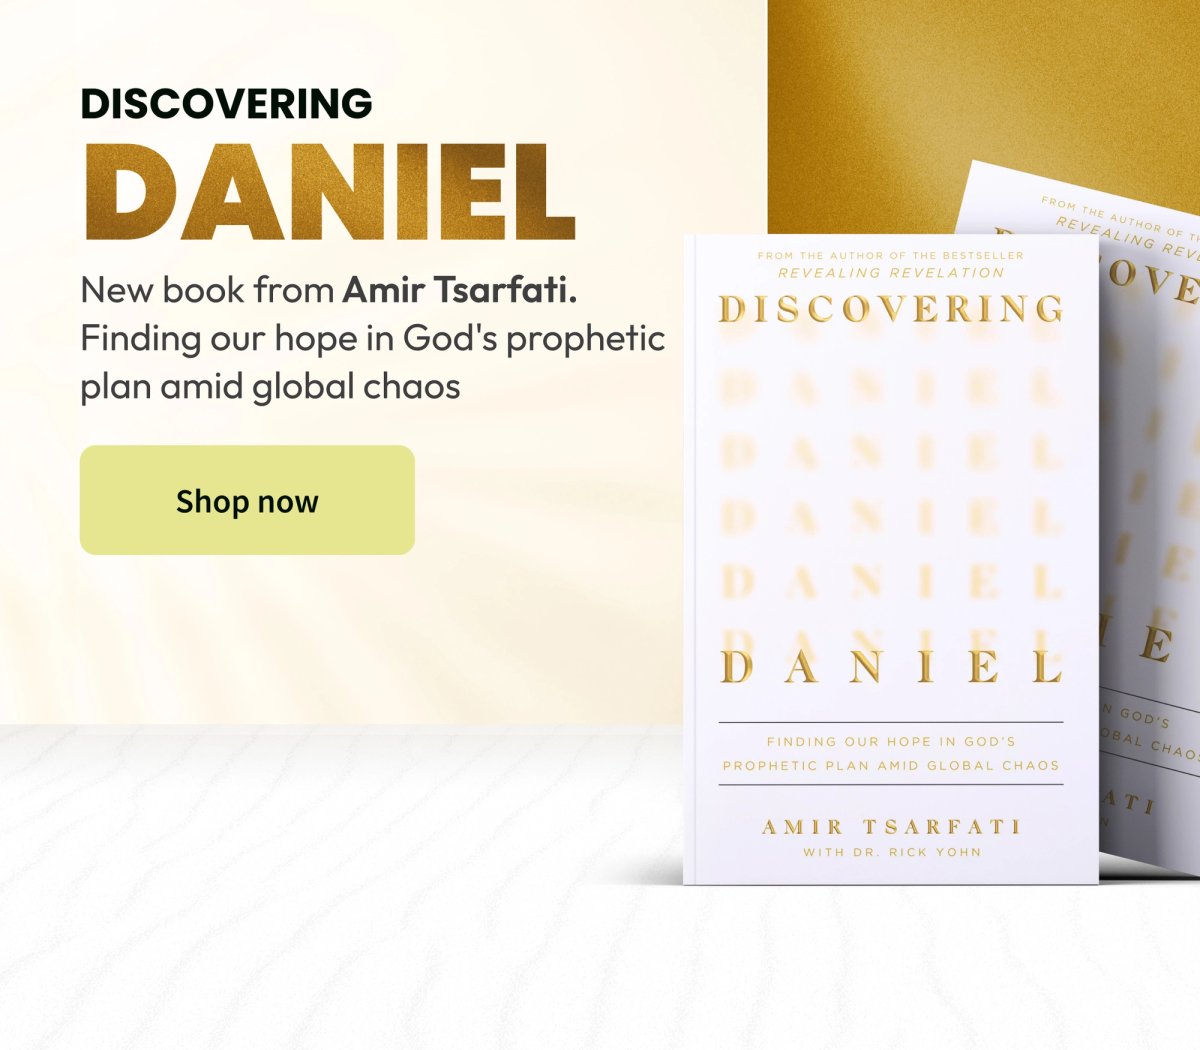 Discovering Daniel by Amir Tsarfati